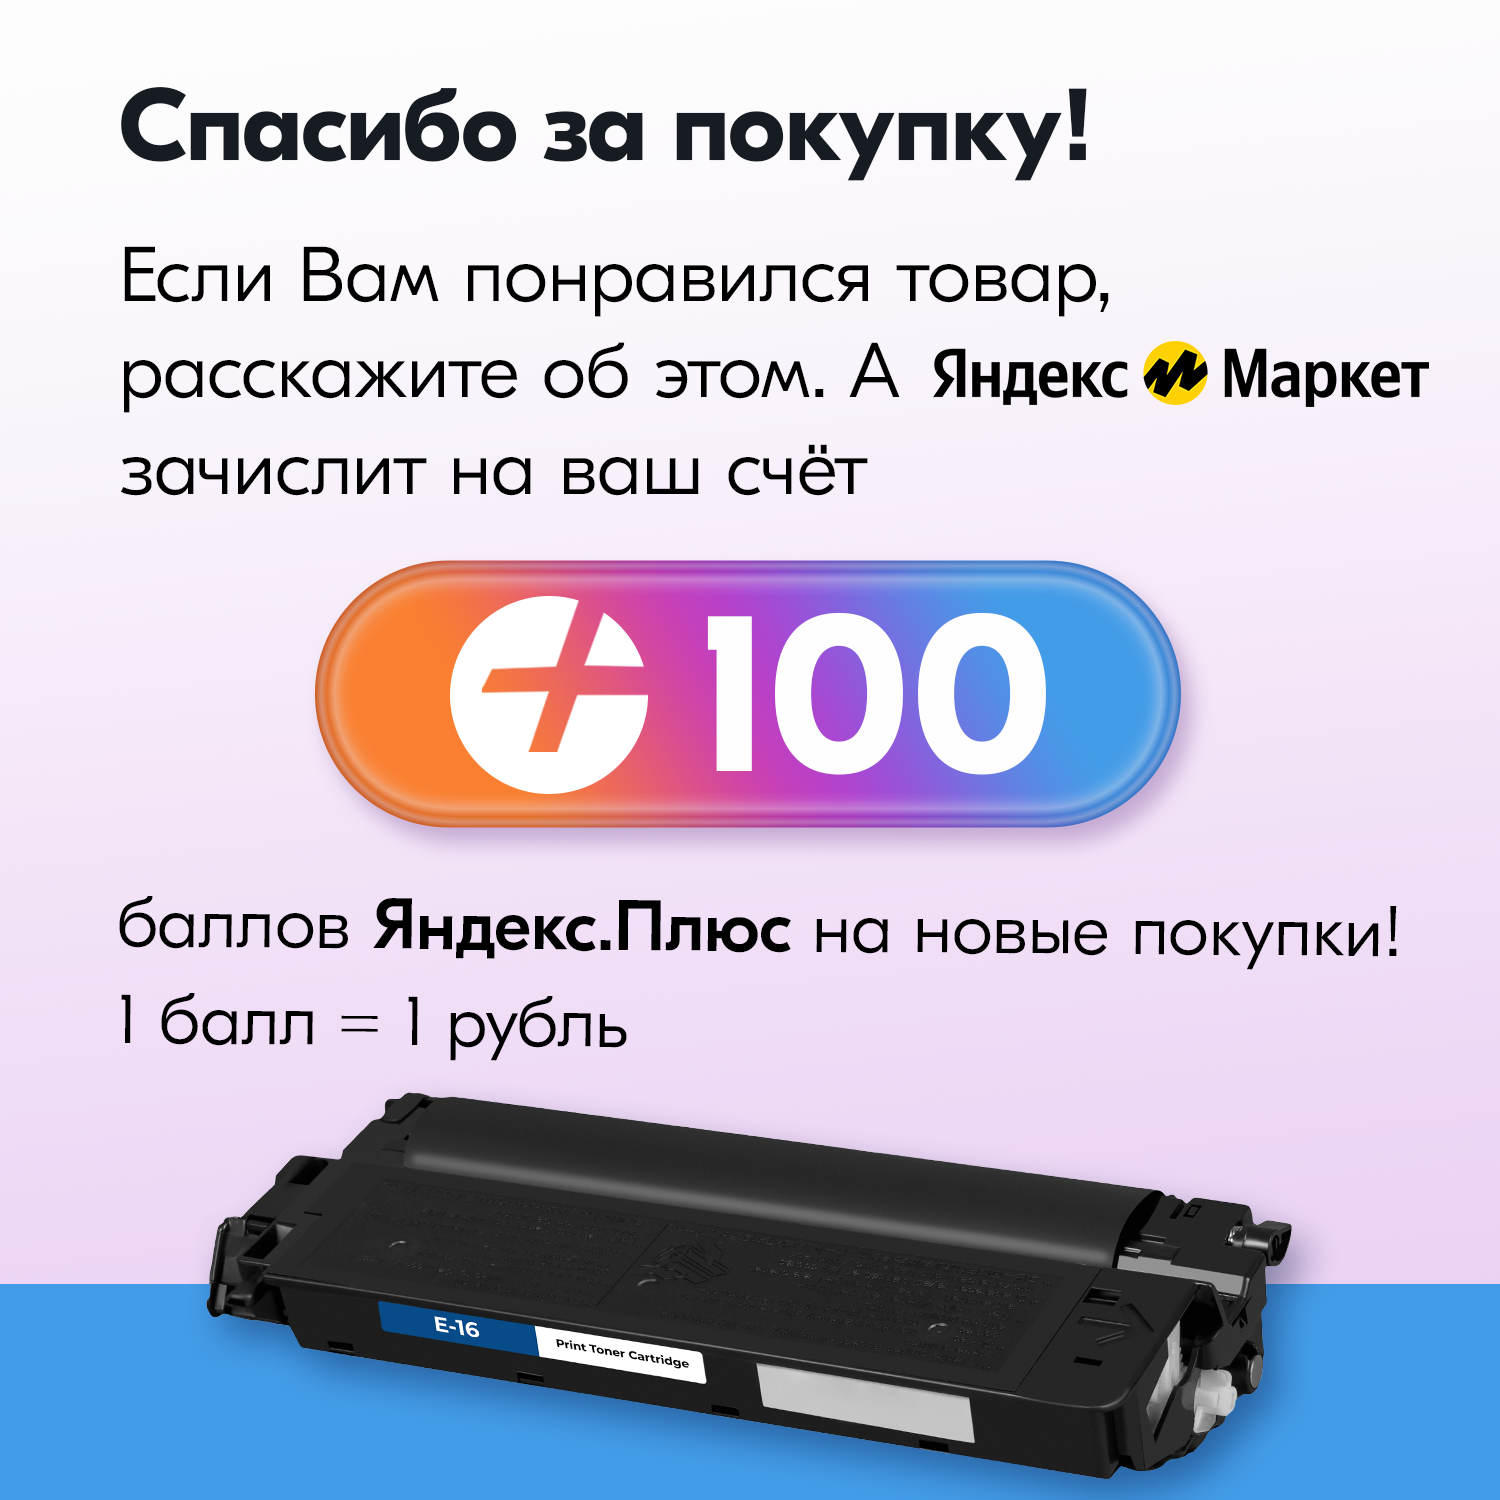 Картридж для лазерного принтера NV Print - фото №9